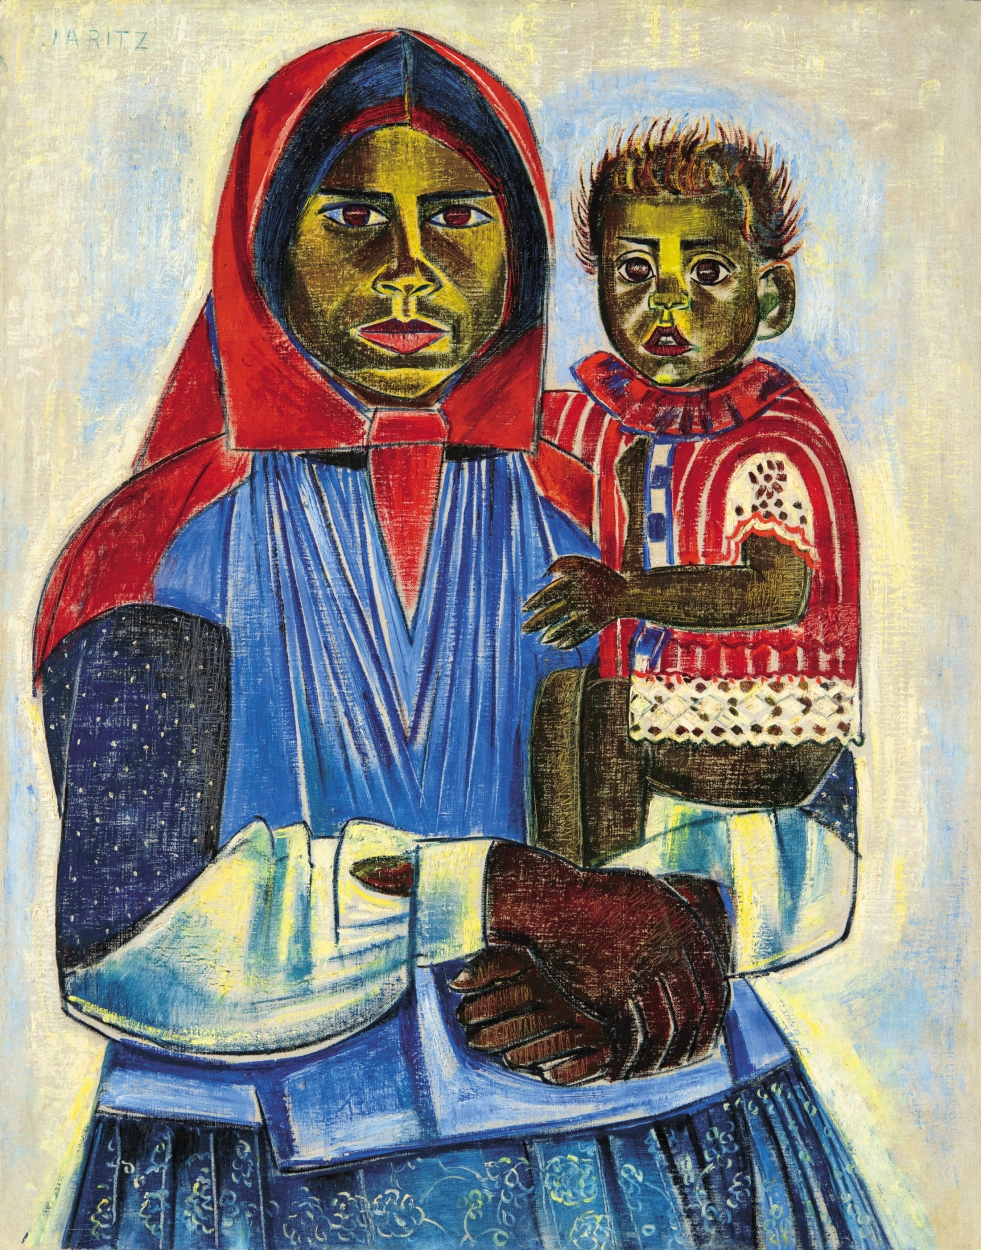 Járitz Józsa (1893-1986) Mother with Child ("La mére au coucher du soleil")